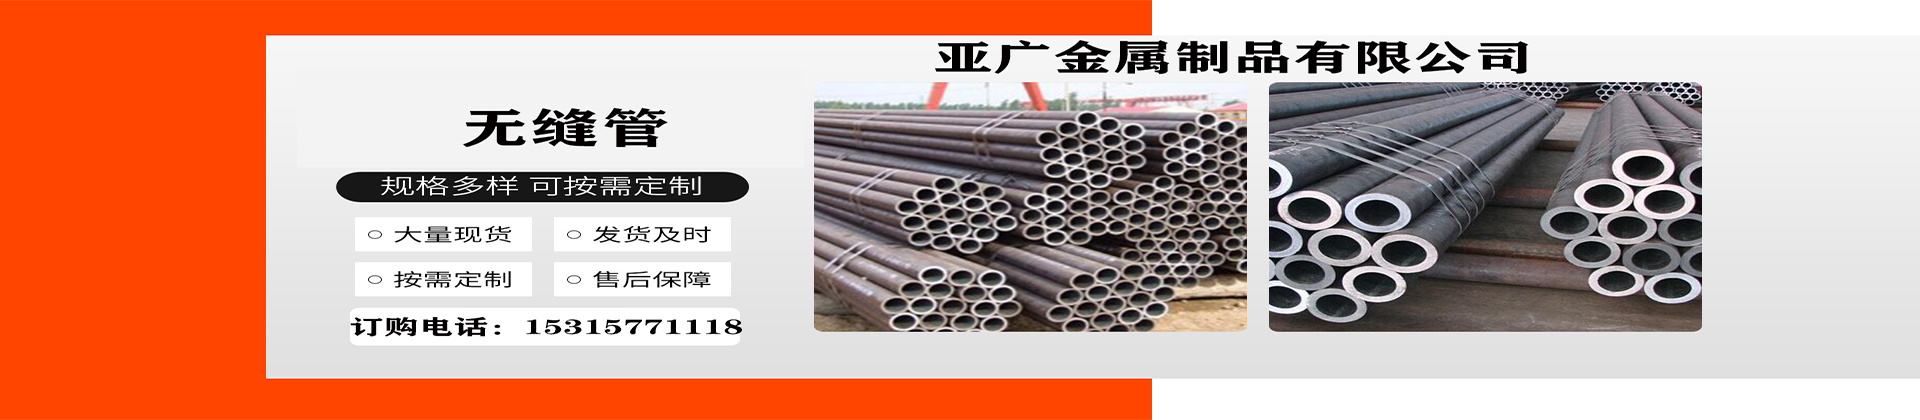 精密钢管、北京本地精密钢管、北京、北京精密钢管